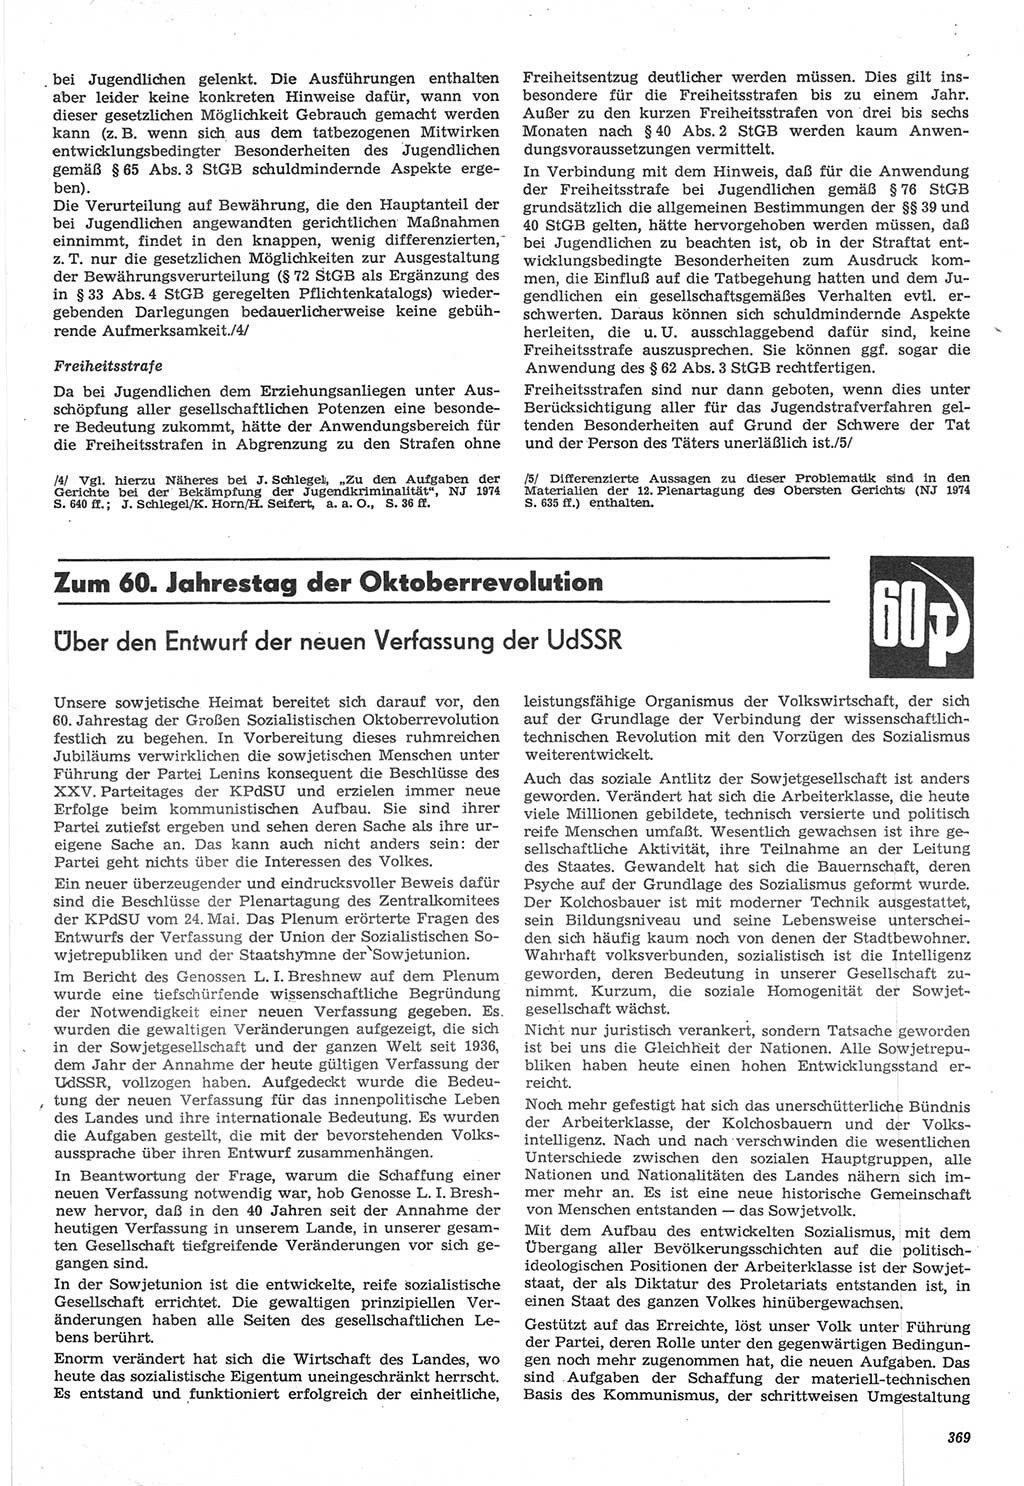 Neue Justiz (NJ), Zeitschrift für Recht und Rechtswissenschaft-Zeitschrift, sozialistisches Recht und Gesetzlichkeit, 31. Jahrgang 1977, Seite 369 (NJ DDR 1977, S. 369)